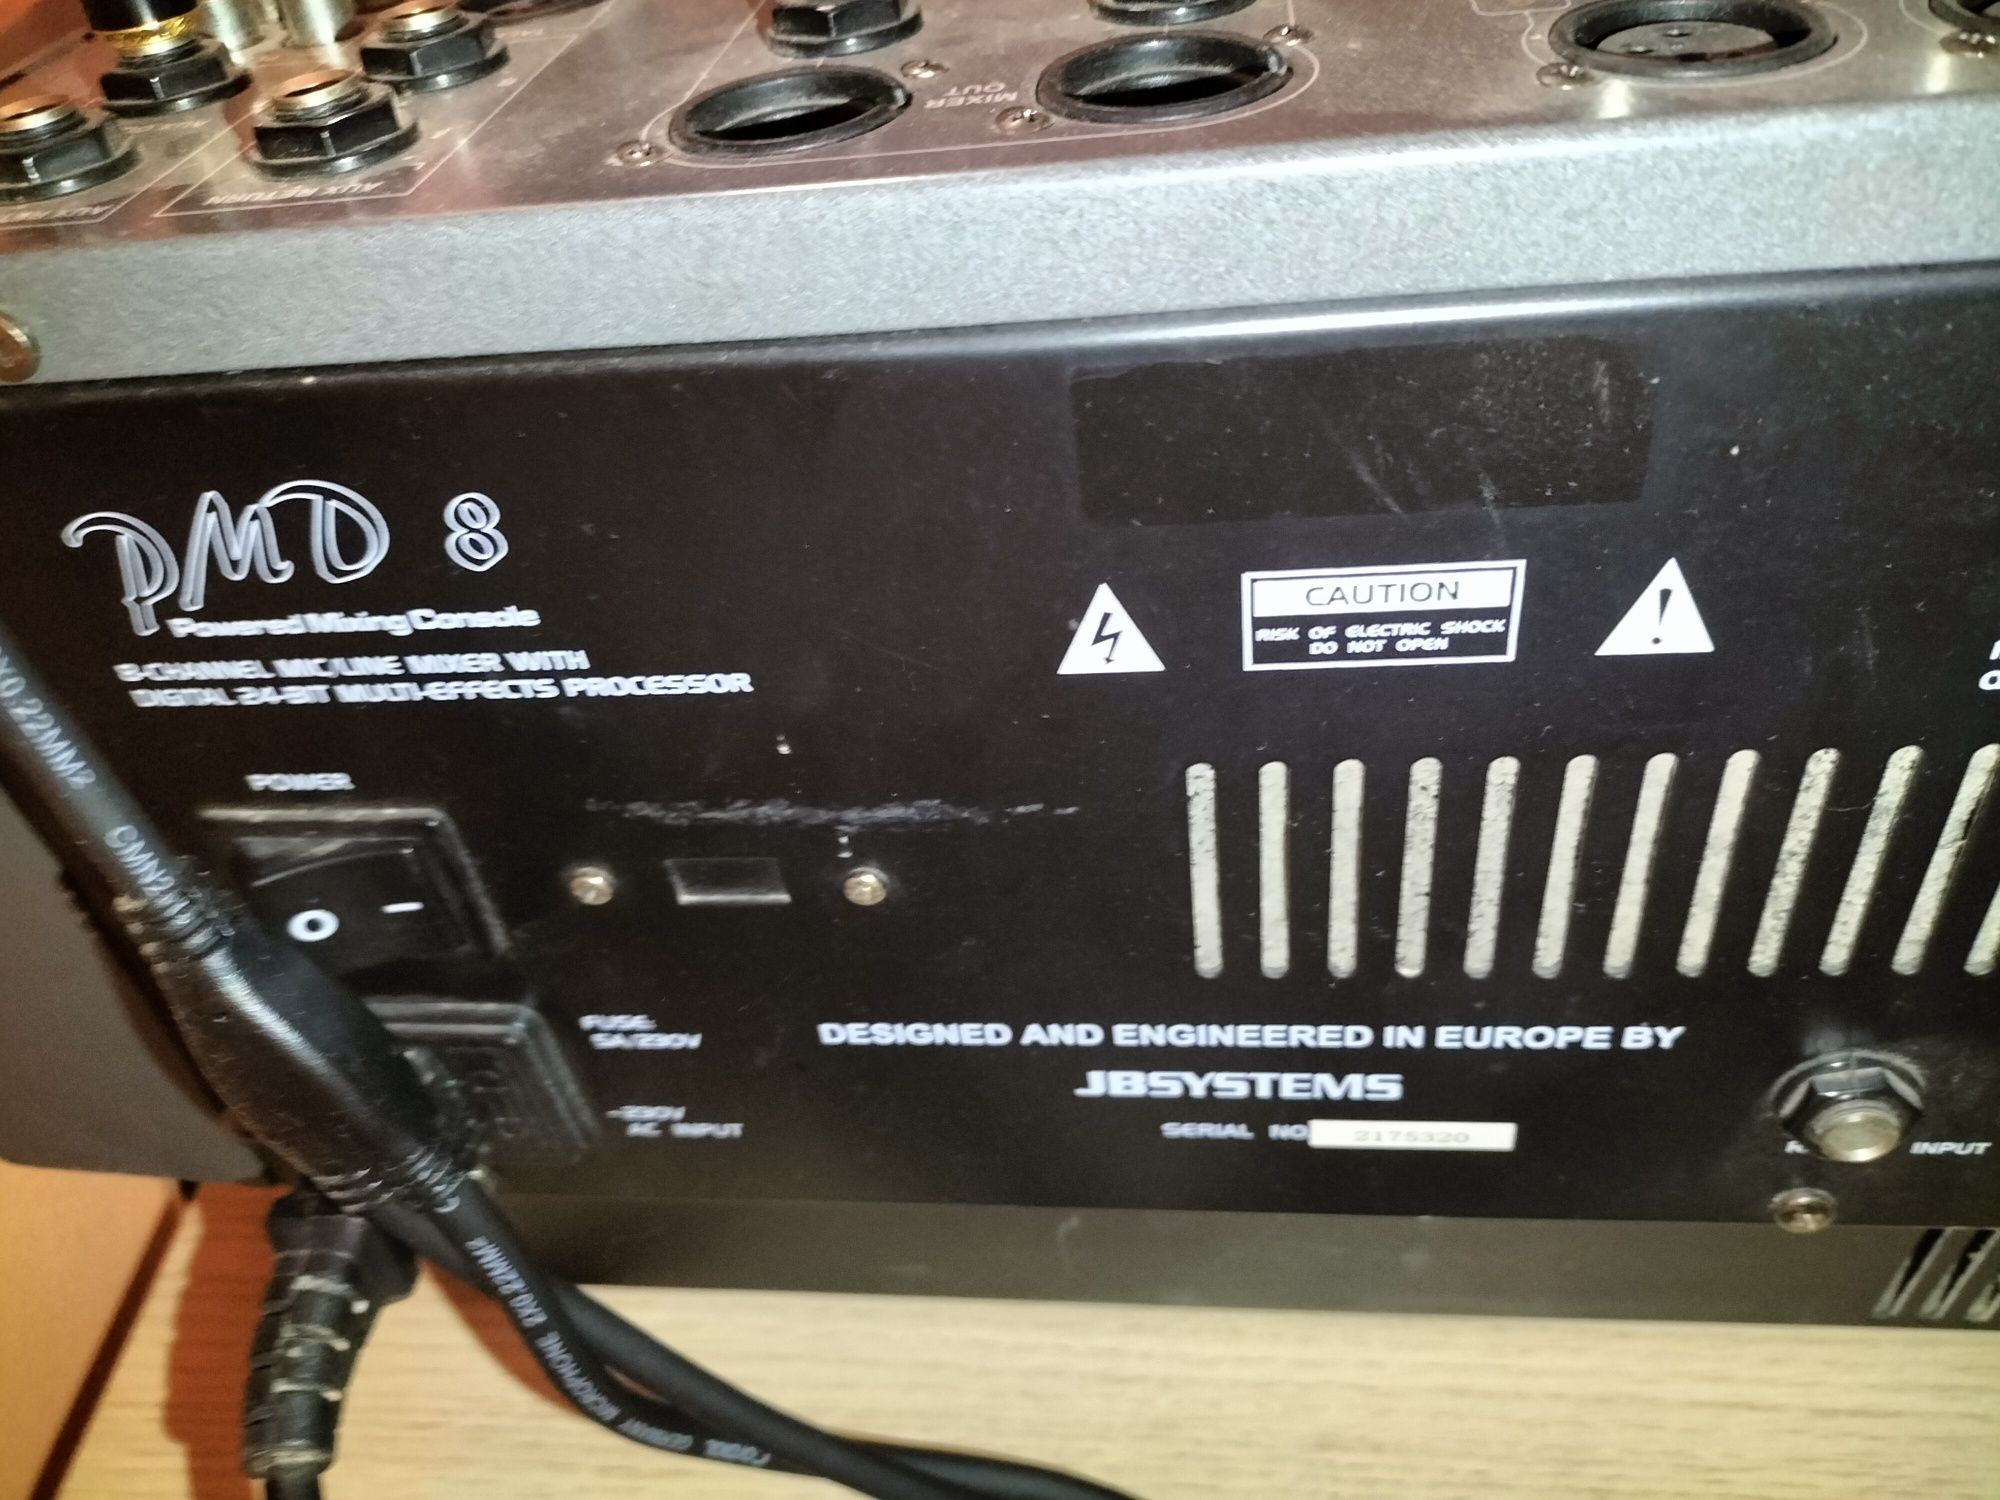 Mixer amplificat 700w JBSYSTEM 8 canale PMD 8